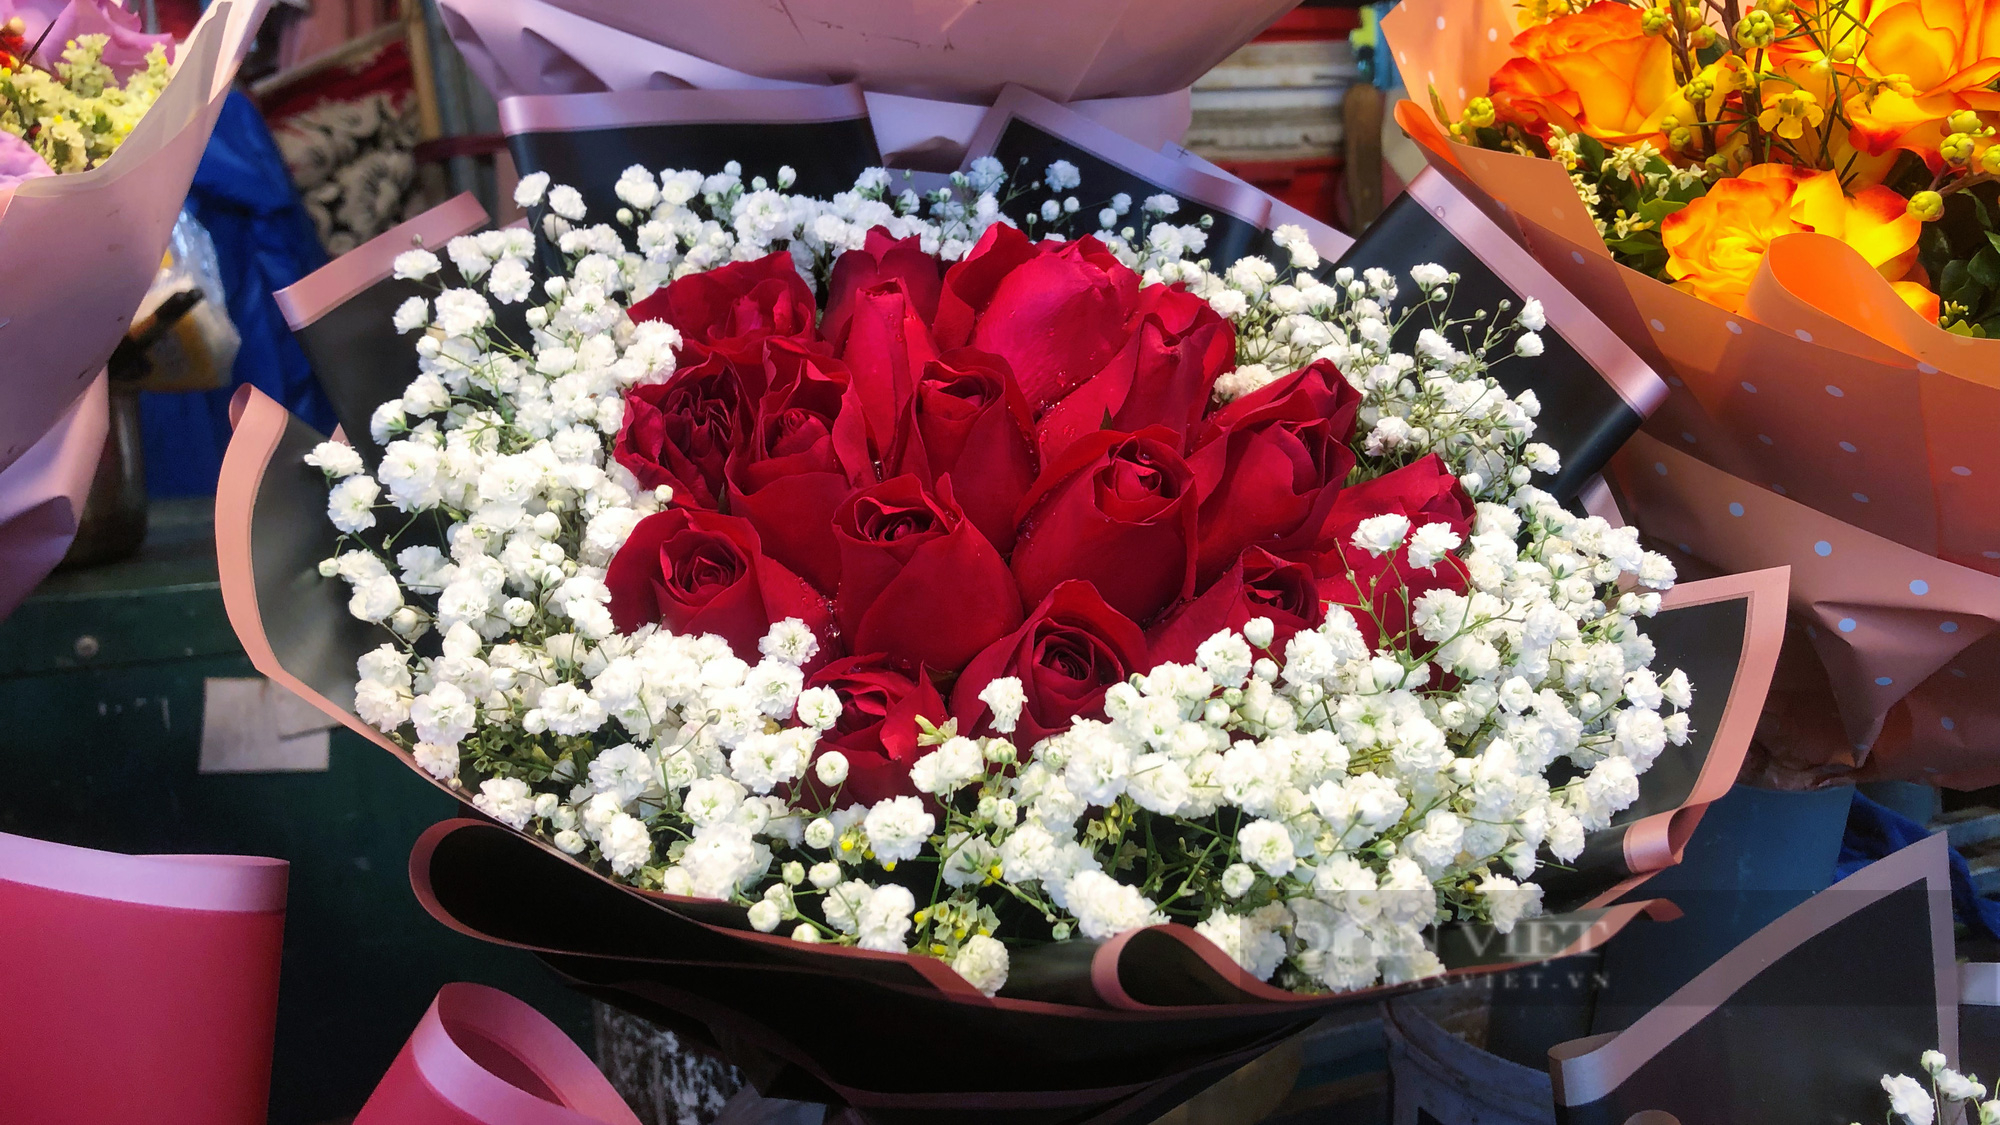 Bó hoa hồng cỡ nhỏ và trung bình có giá giao động từ 400.000-800.000 đồng một bó. 